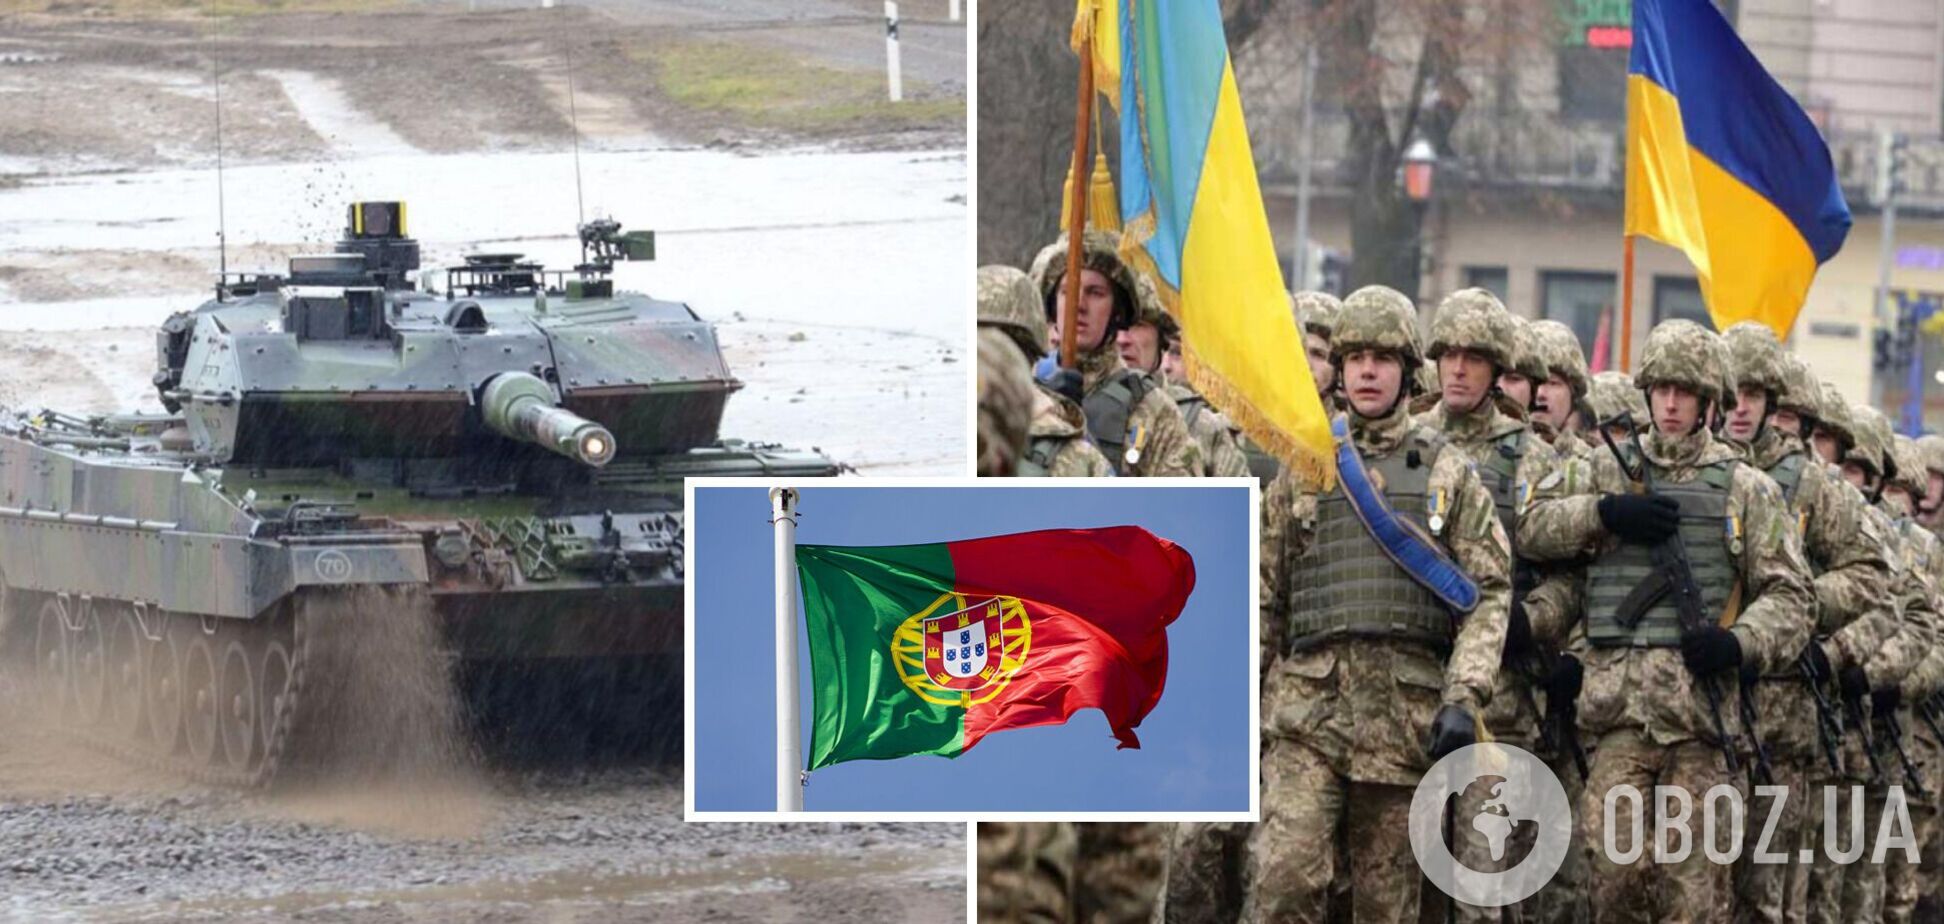 Португалия передаст Украине танки Leopard 2: премьер страны сделал заявление